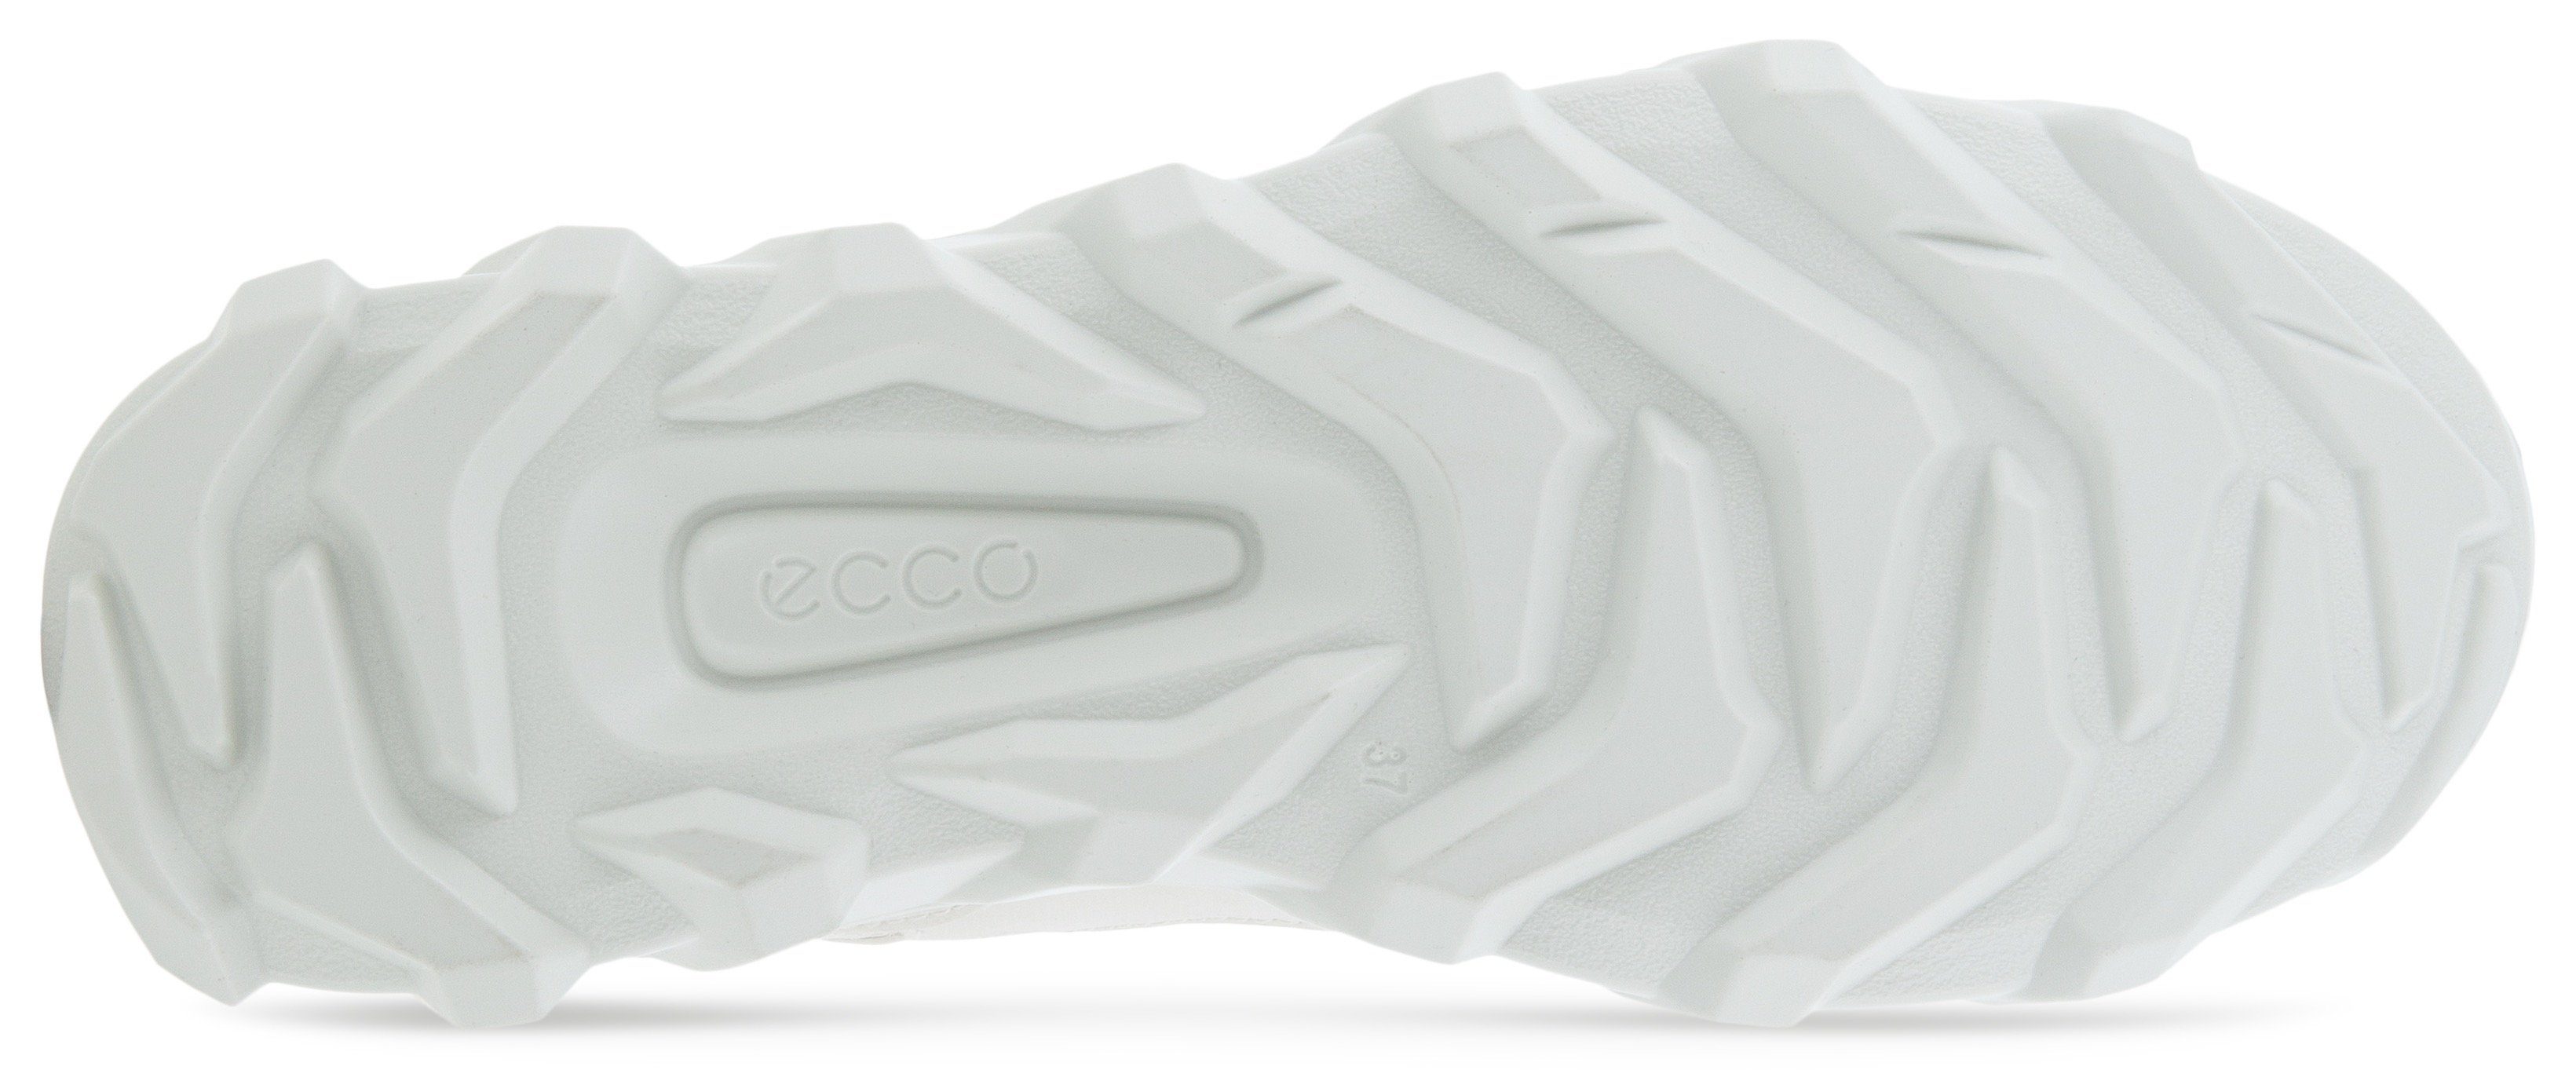 MX Ecco W Sneaker mit weiß trittdämpfender ECCO Fluidform-Ausstattung Slip-On